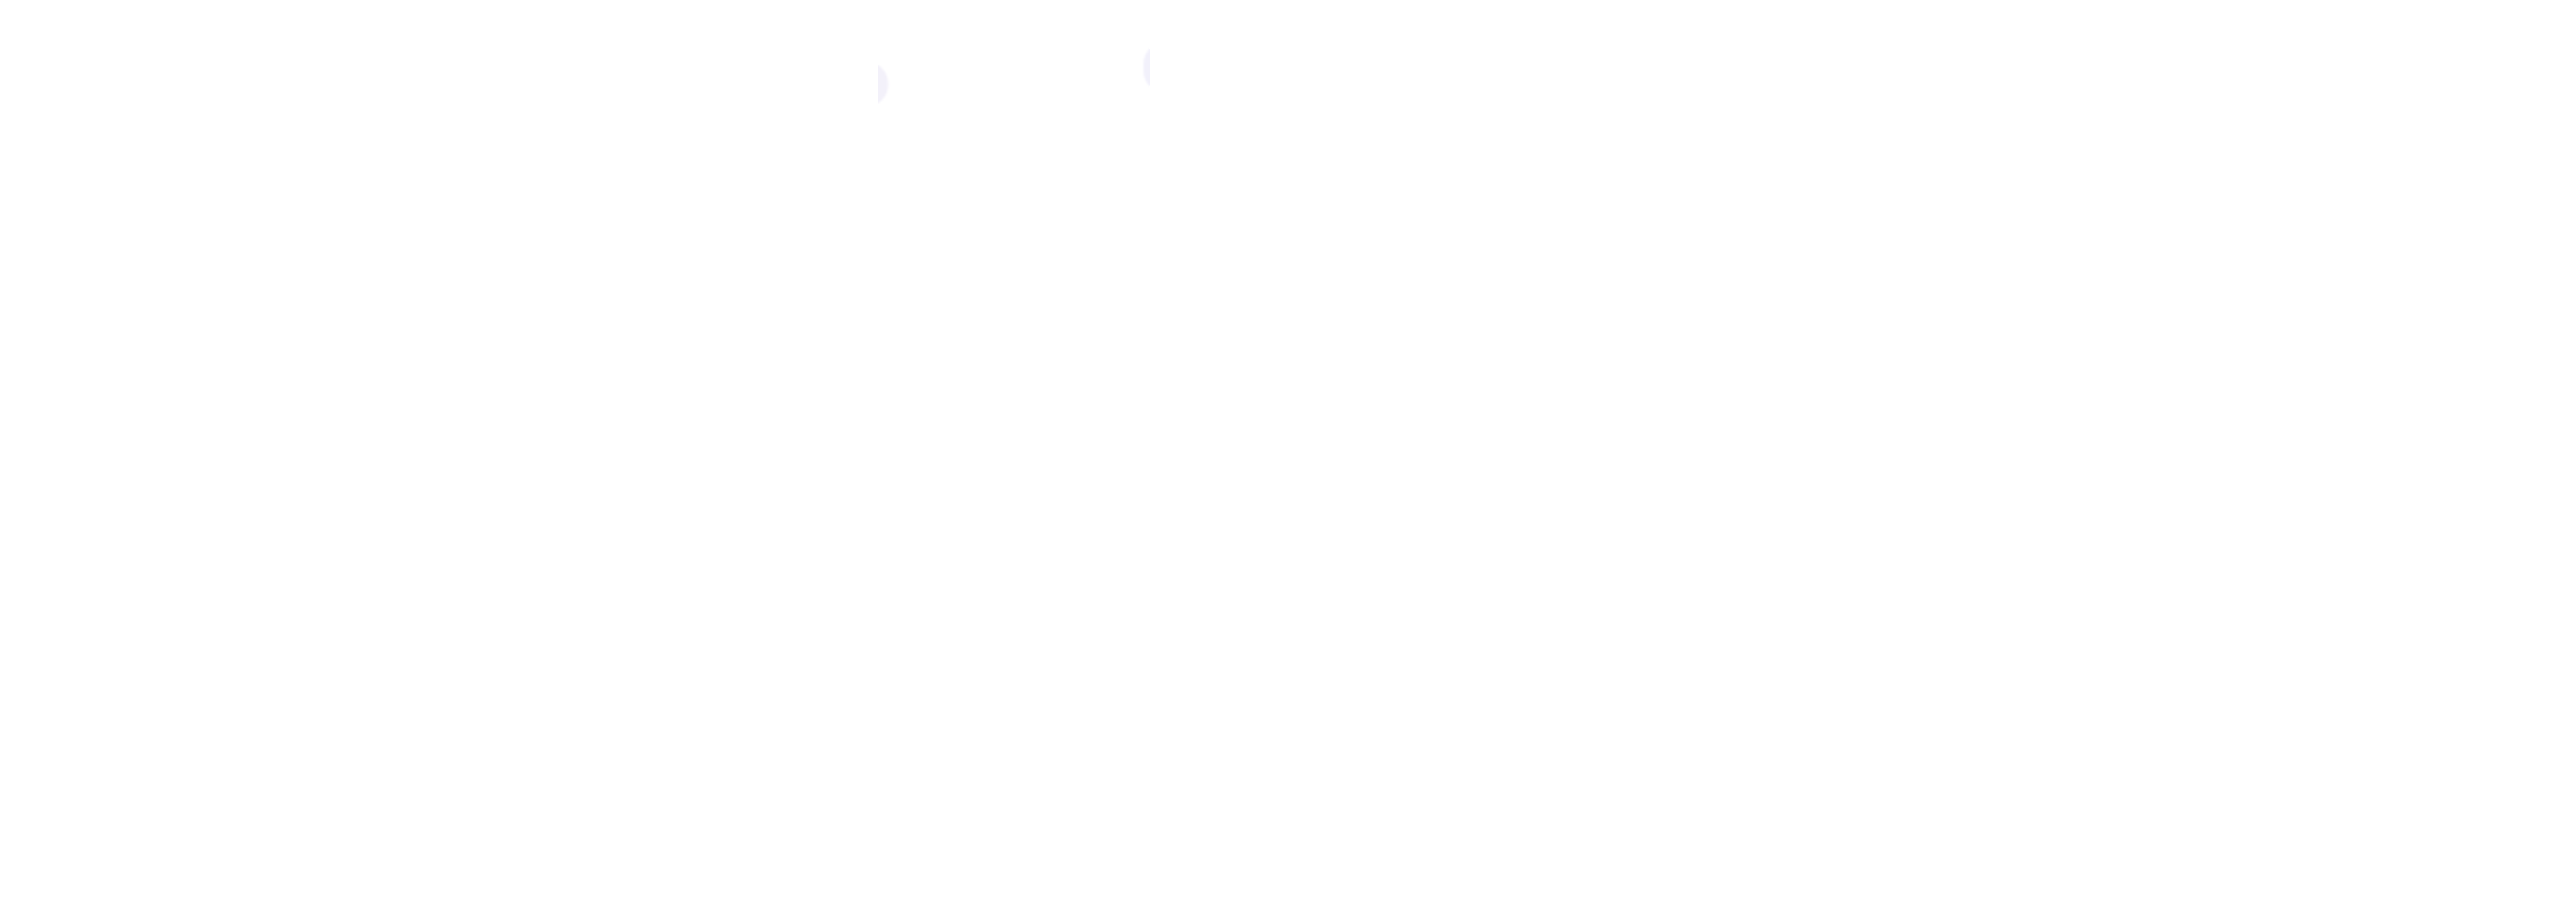 Giełda kryptowalut Egera - logo